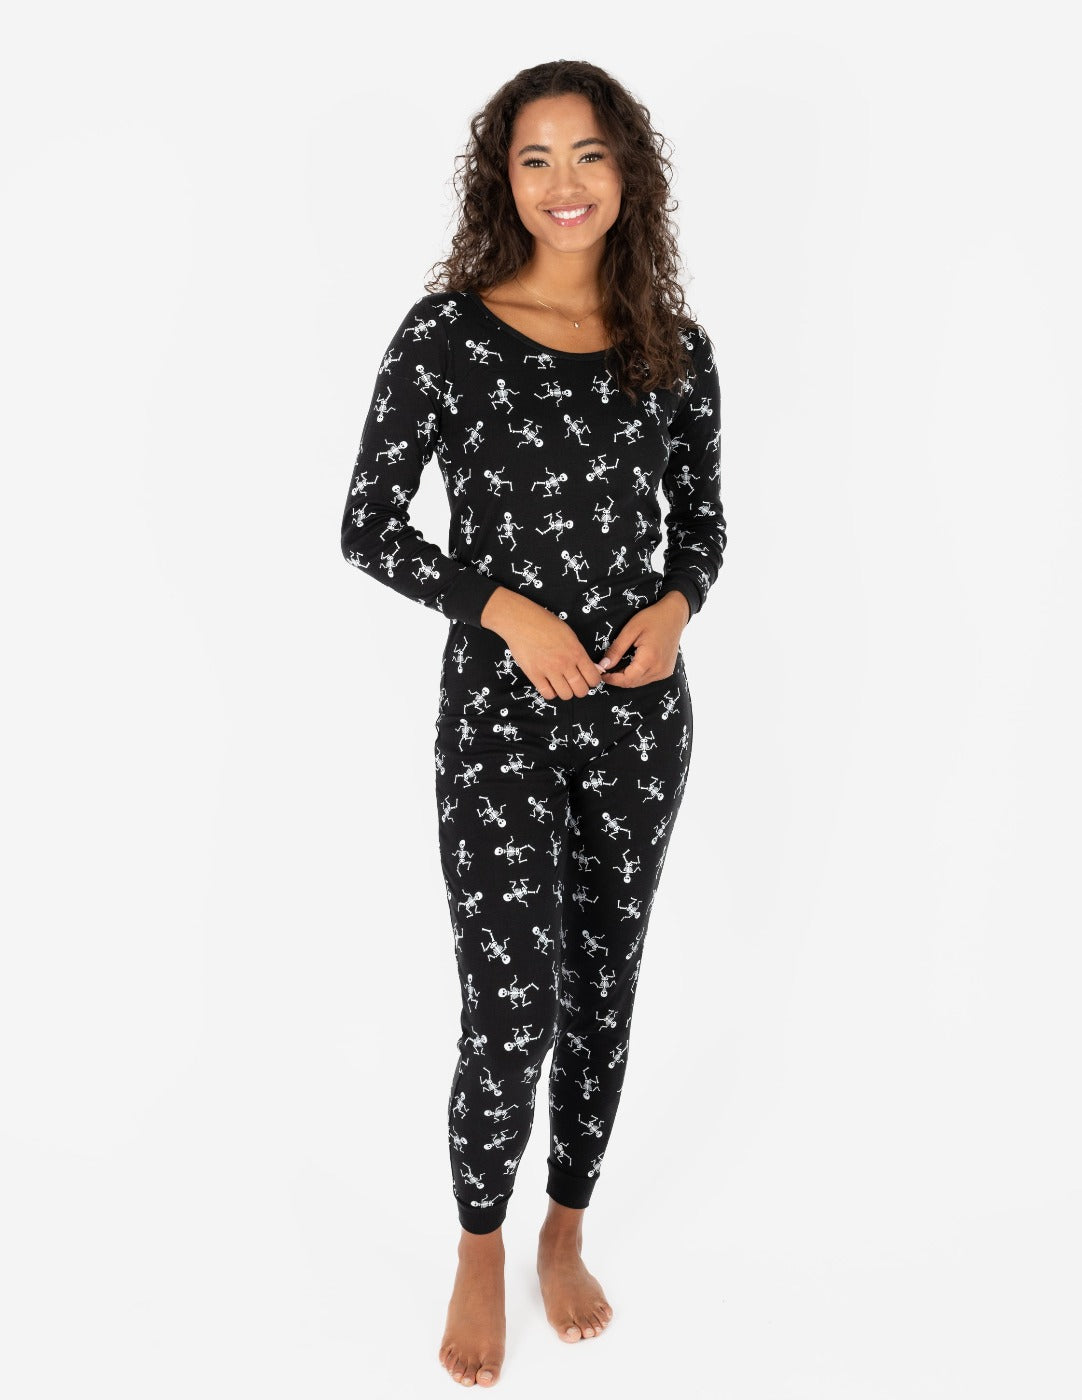 black and white skeleton women's pajamas